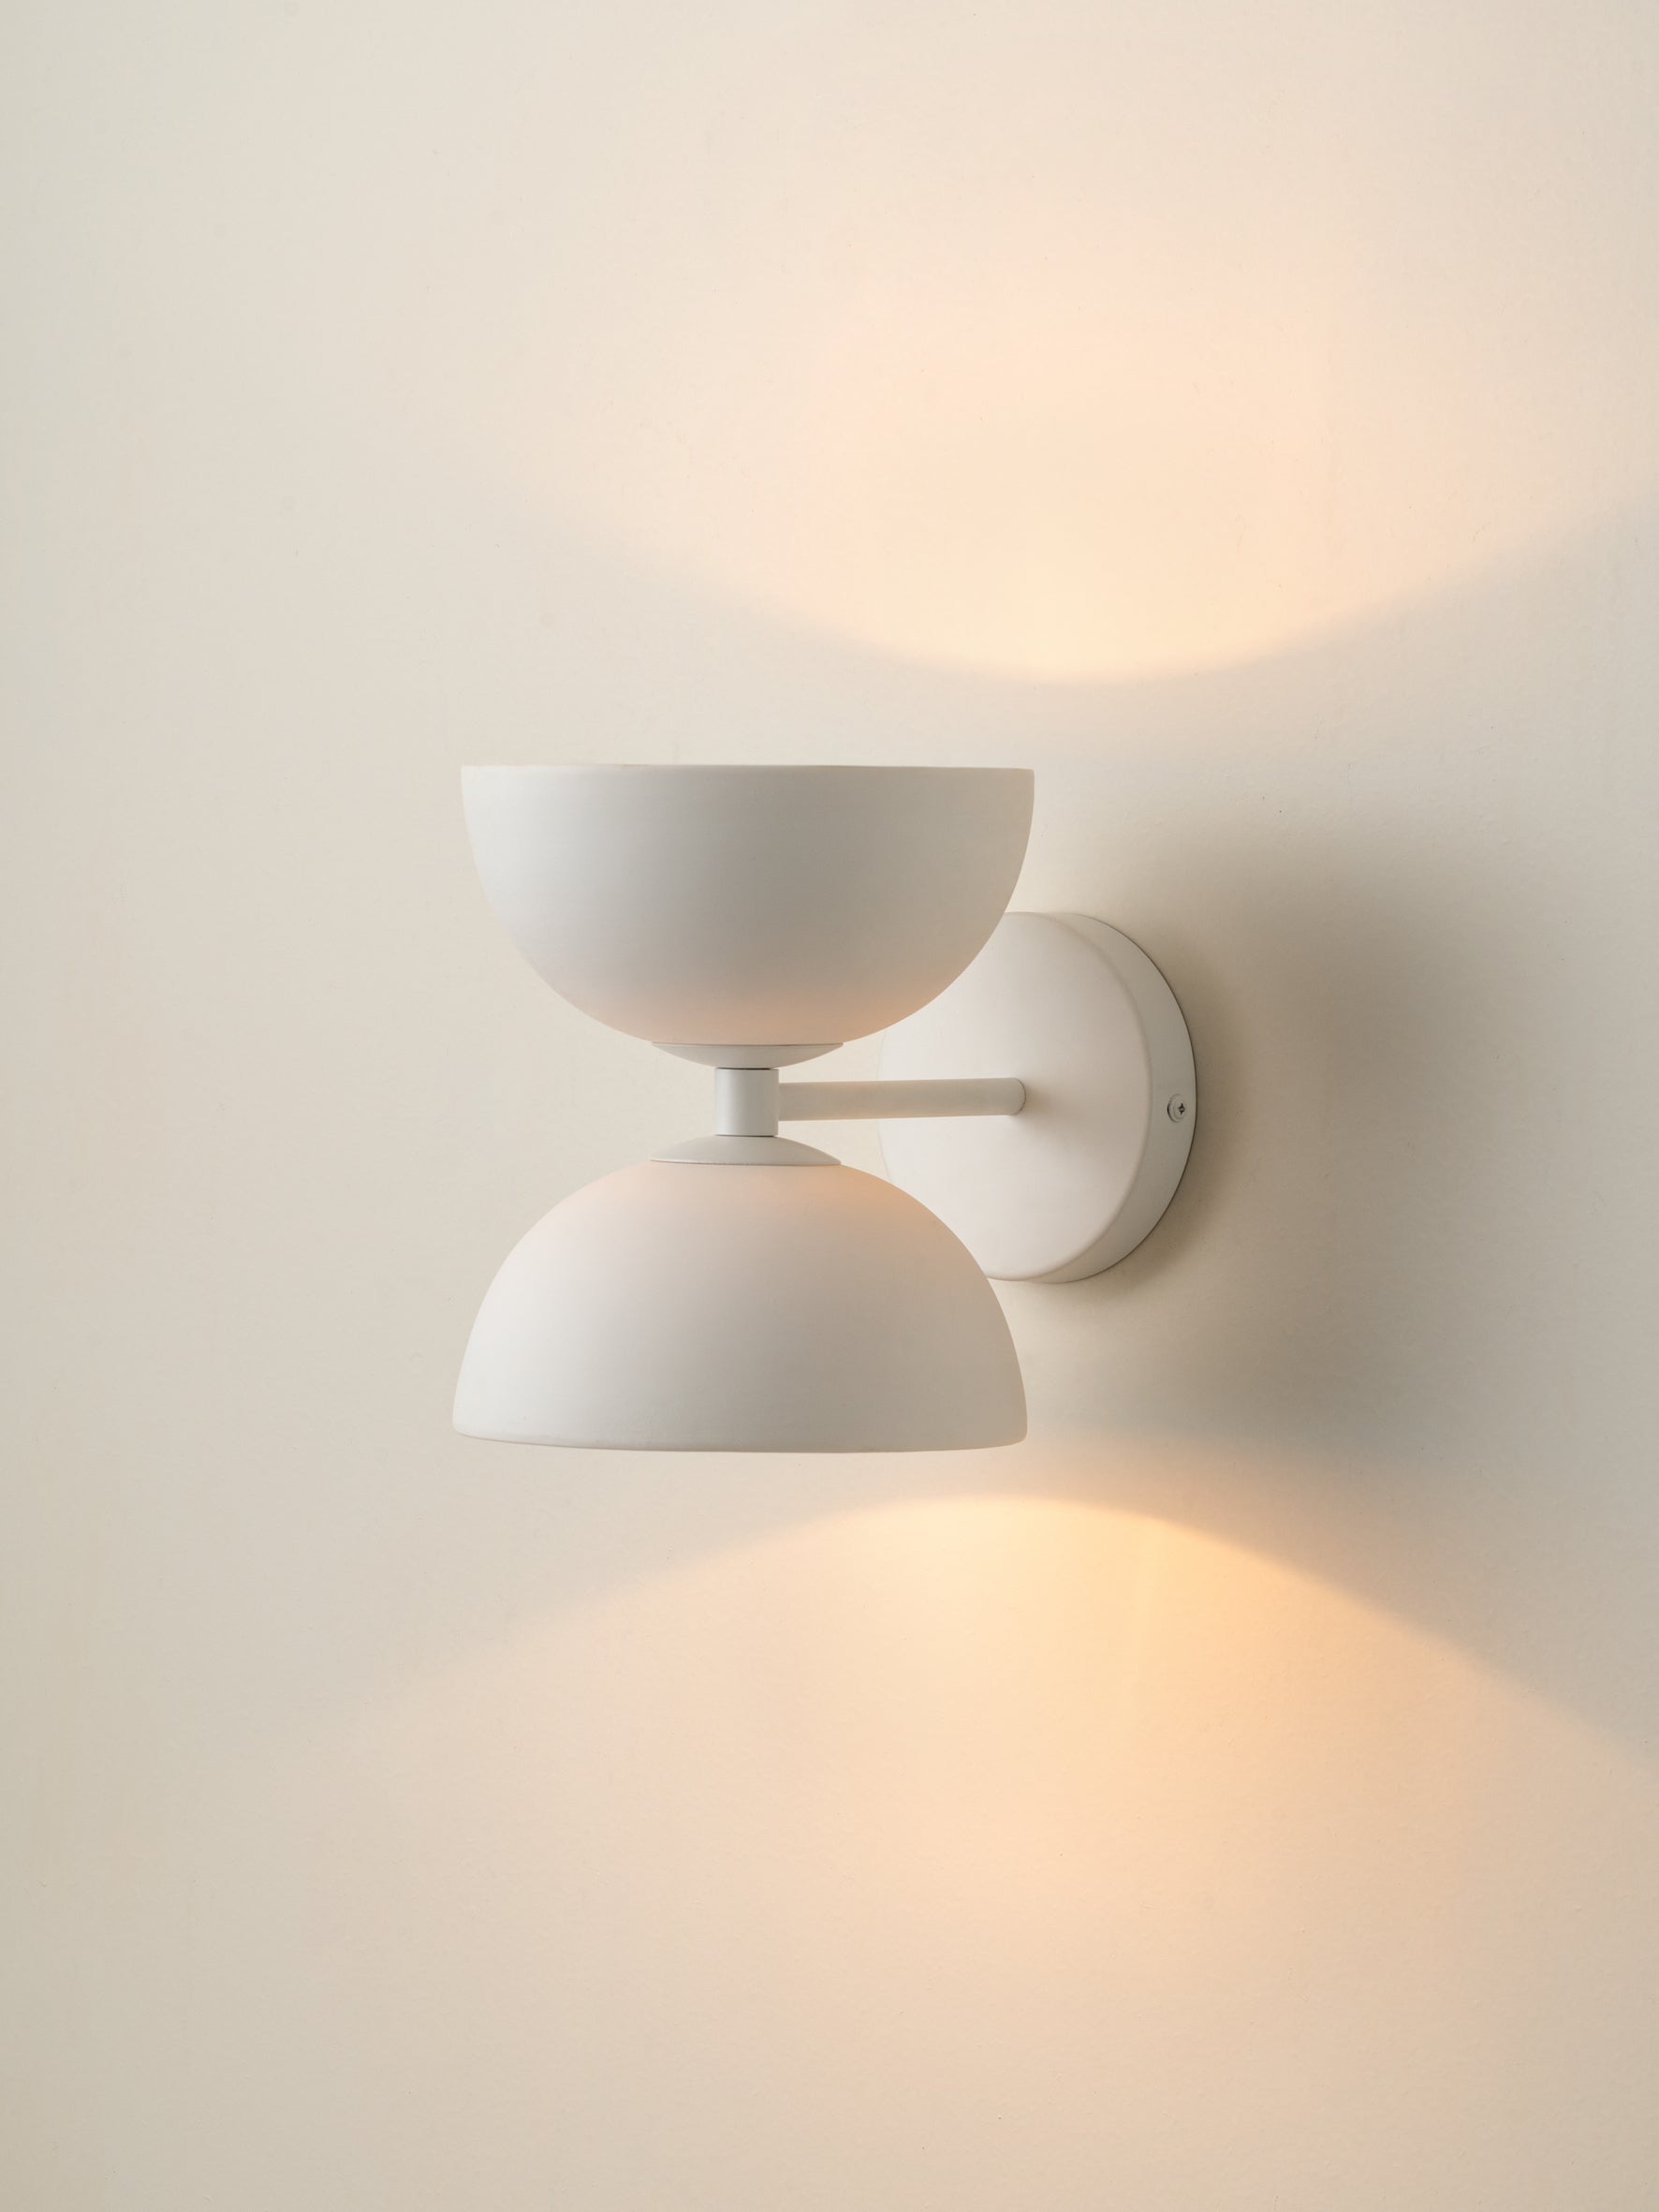 Ruzo - 2 light warm white and porcelain wall light | Wall Light | Lights & Lamps | UK | Modern Affordable Designer Lighting